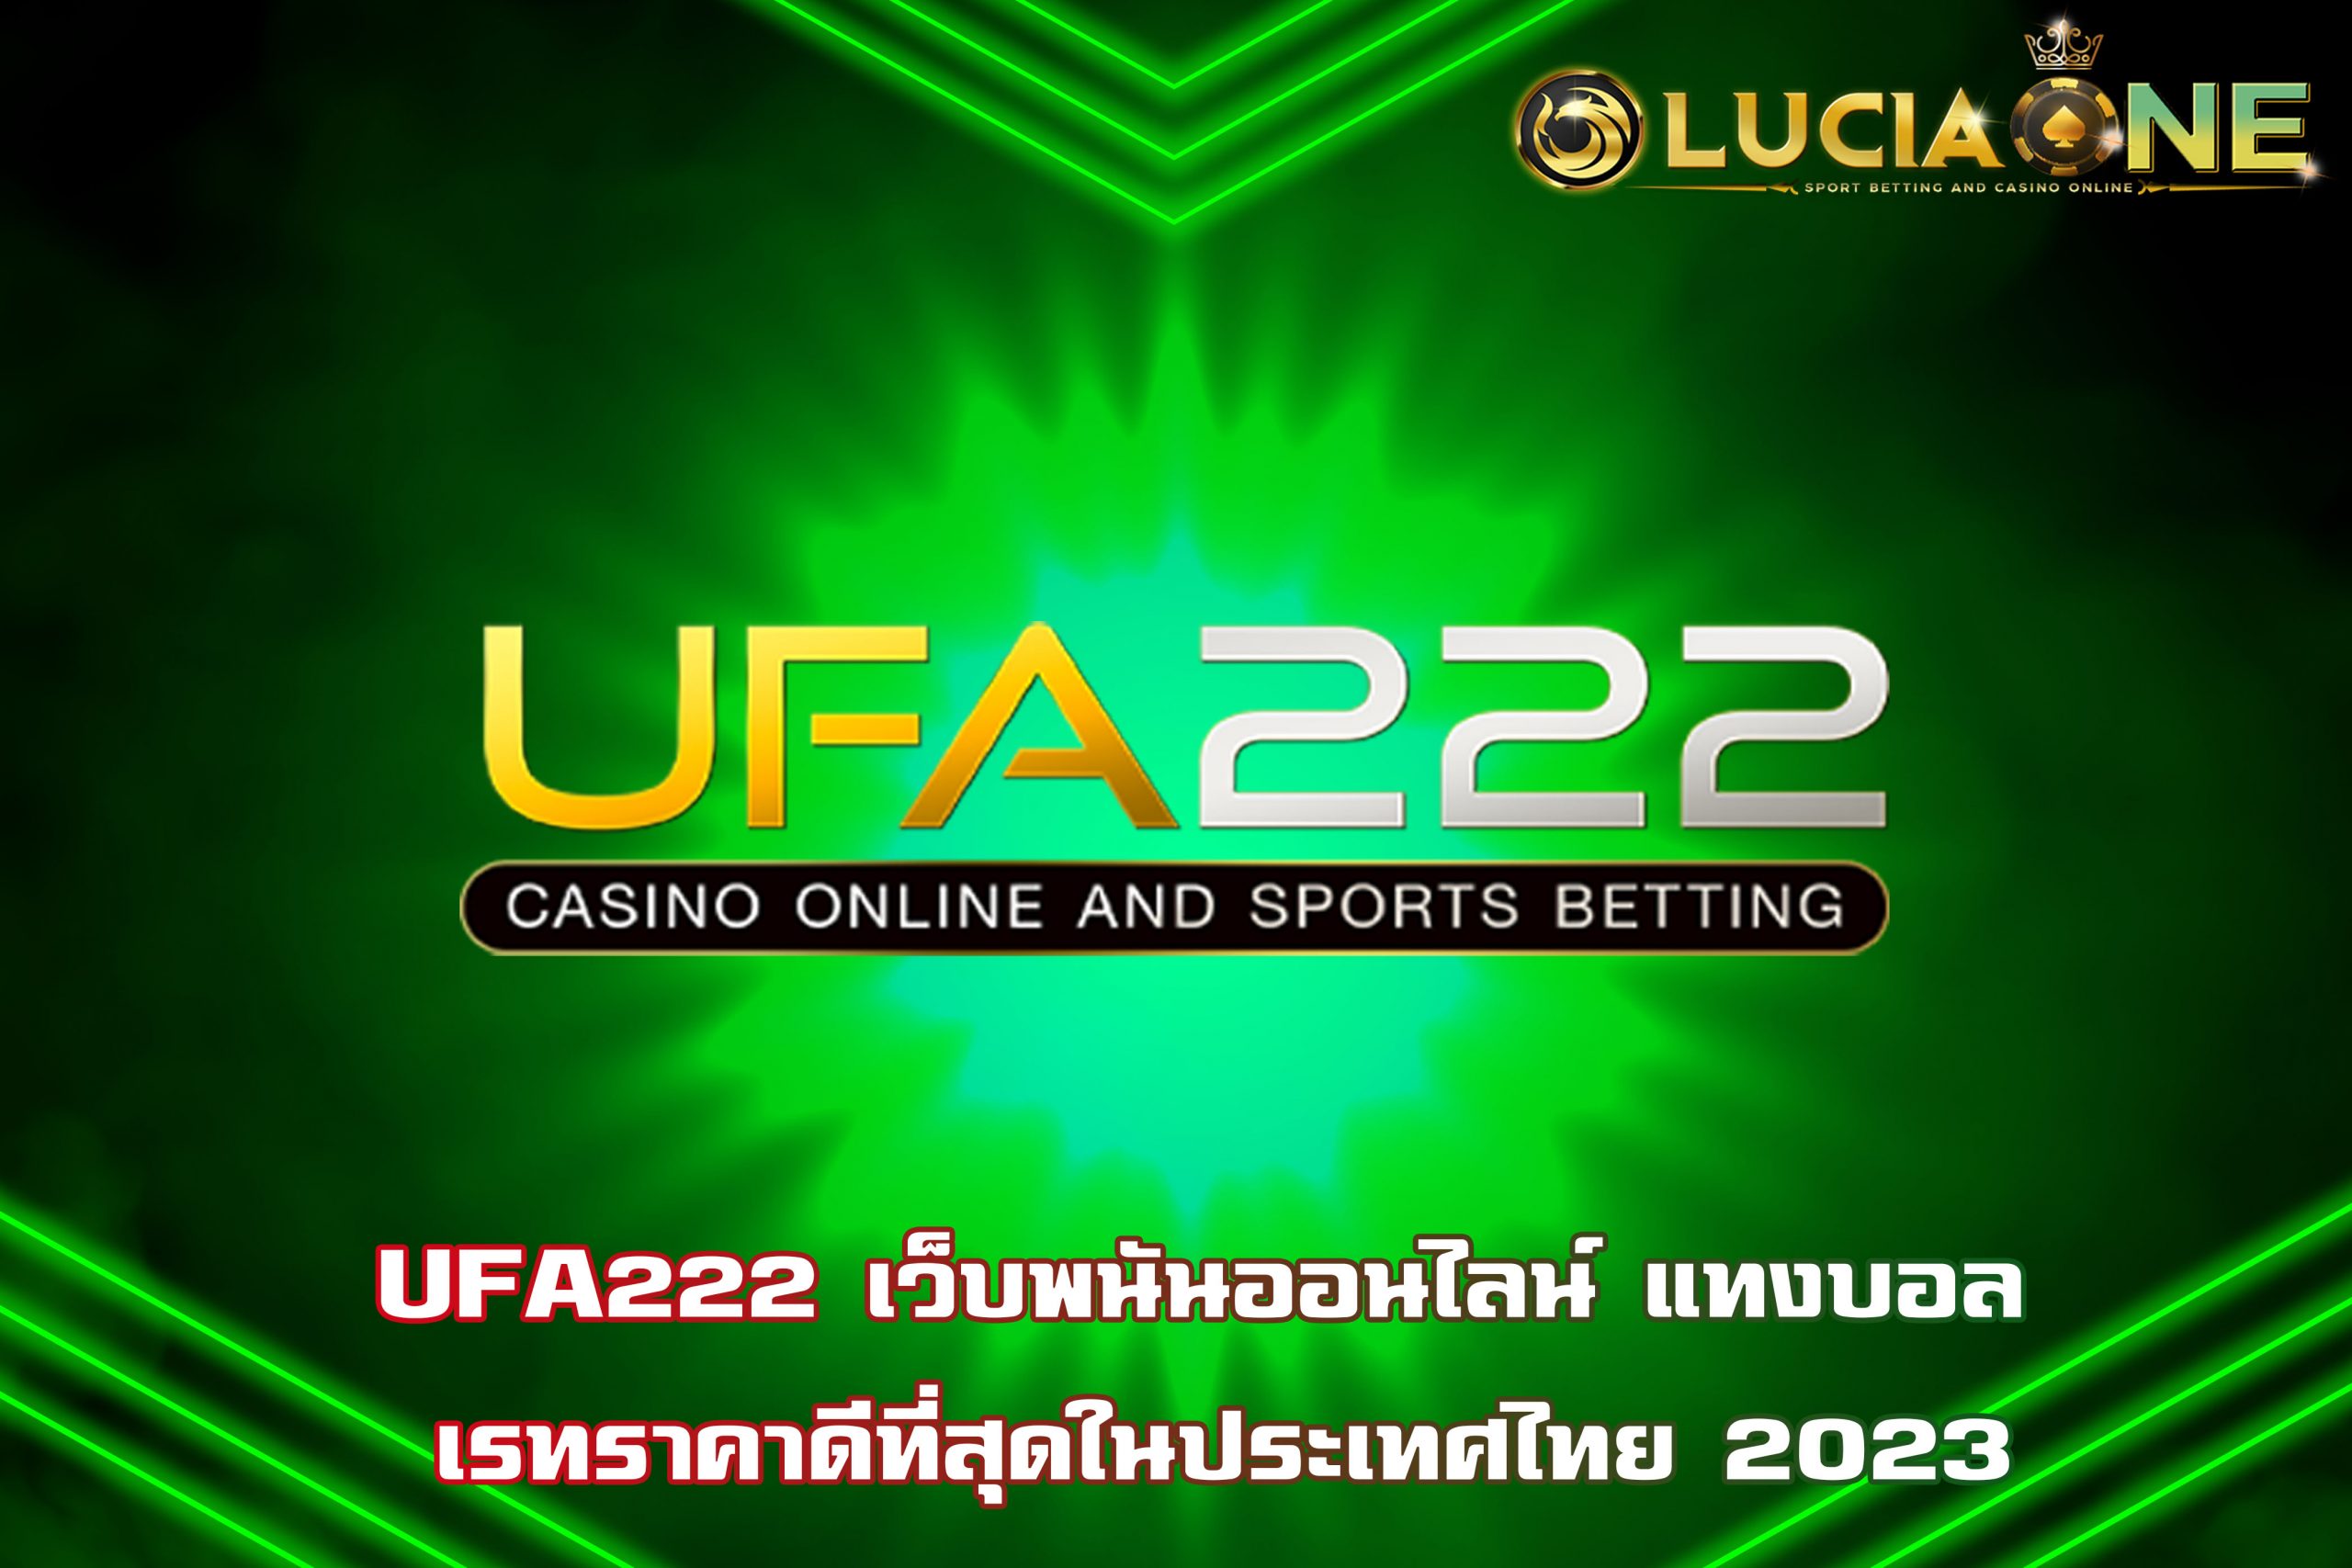 UFA222 เว็บพนันออนไลน์ แทงบอล เรทราคาดีที่สุดในประเทศไทย 2023